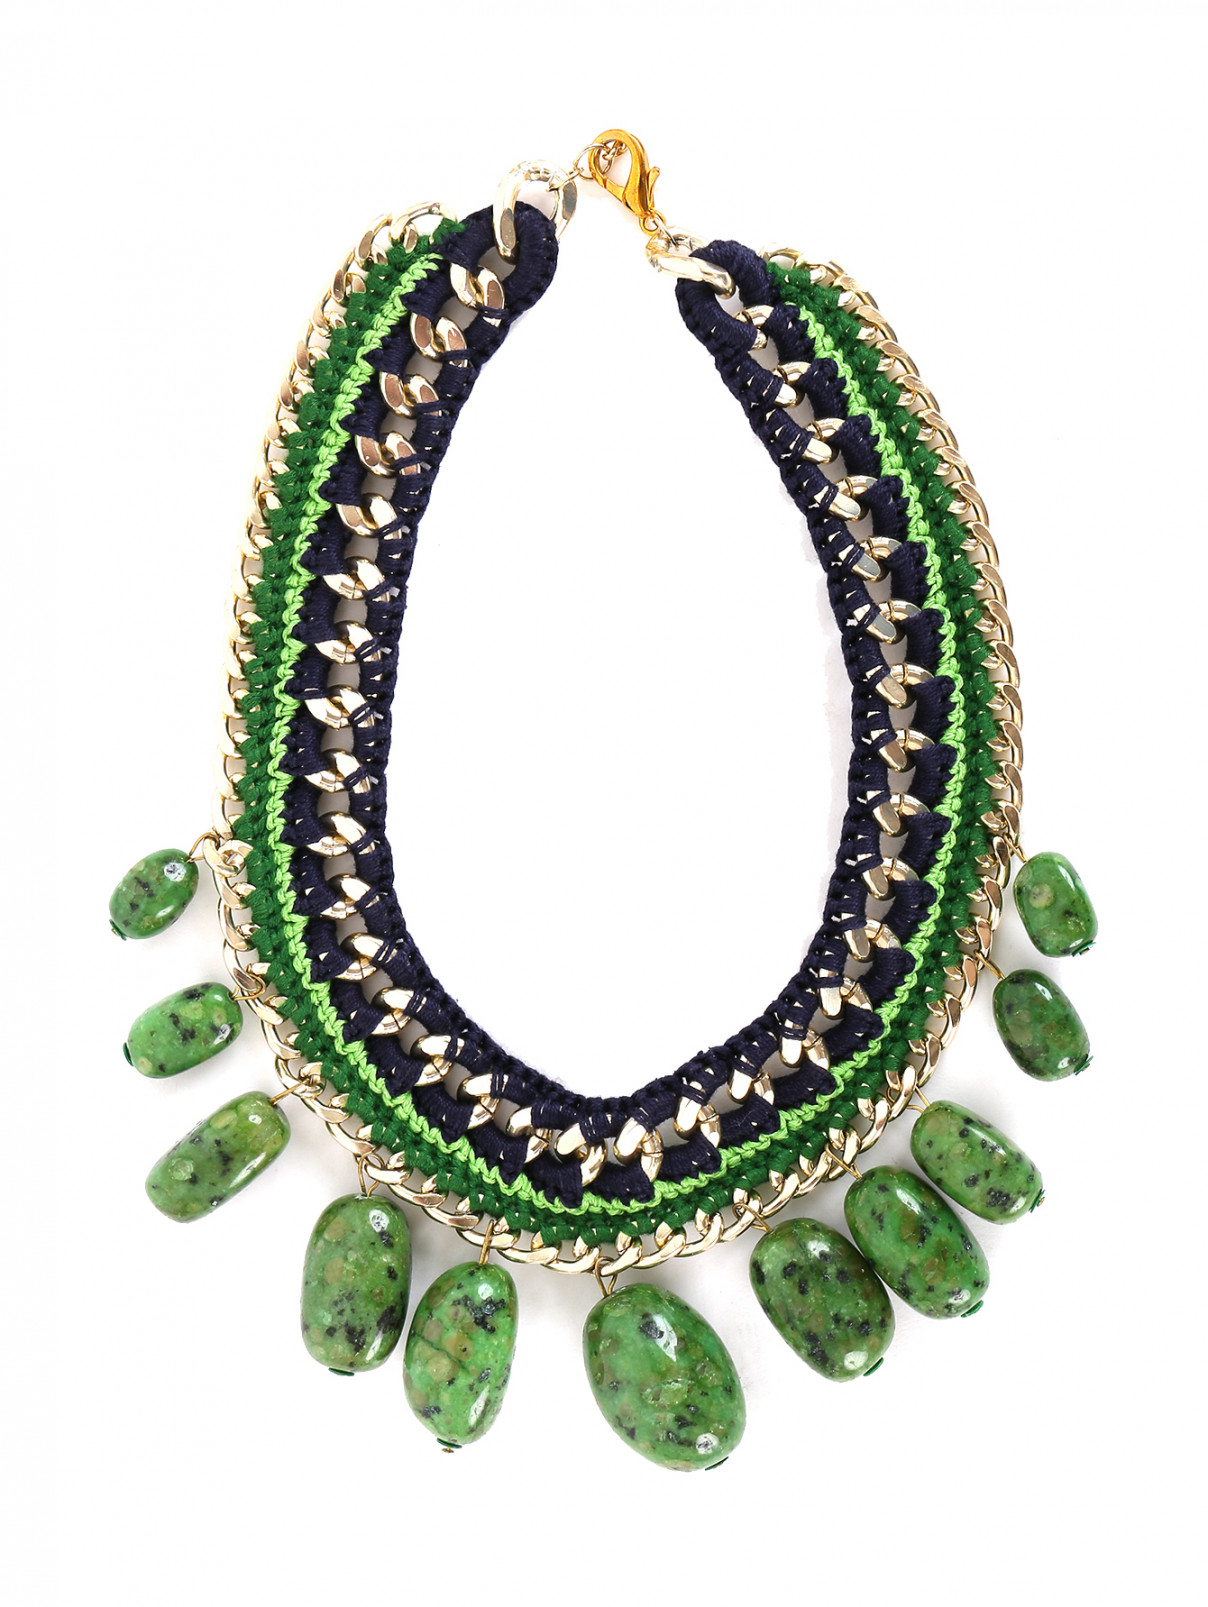 Ожерелье из текстиля, камней и металла Inga Kazumyan  –  Общий вид  – Цвет:  Зеленый